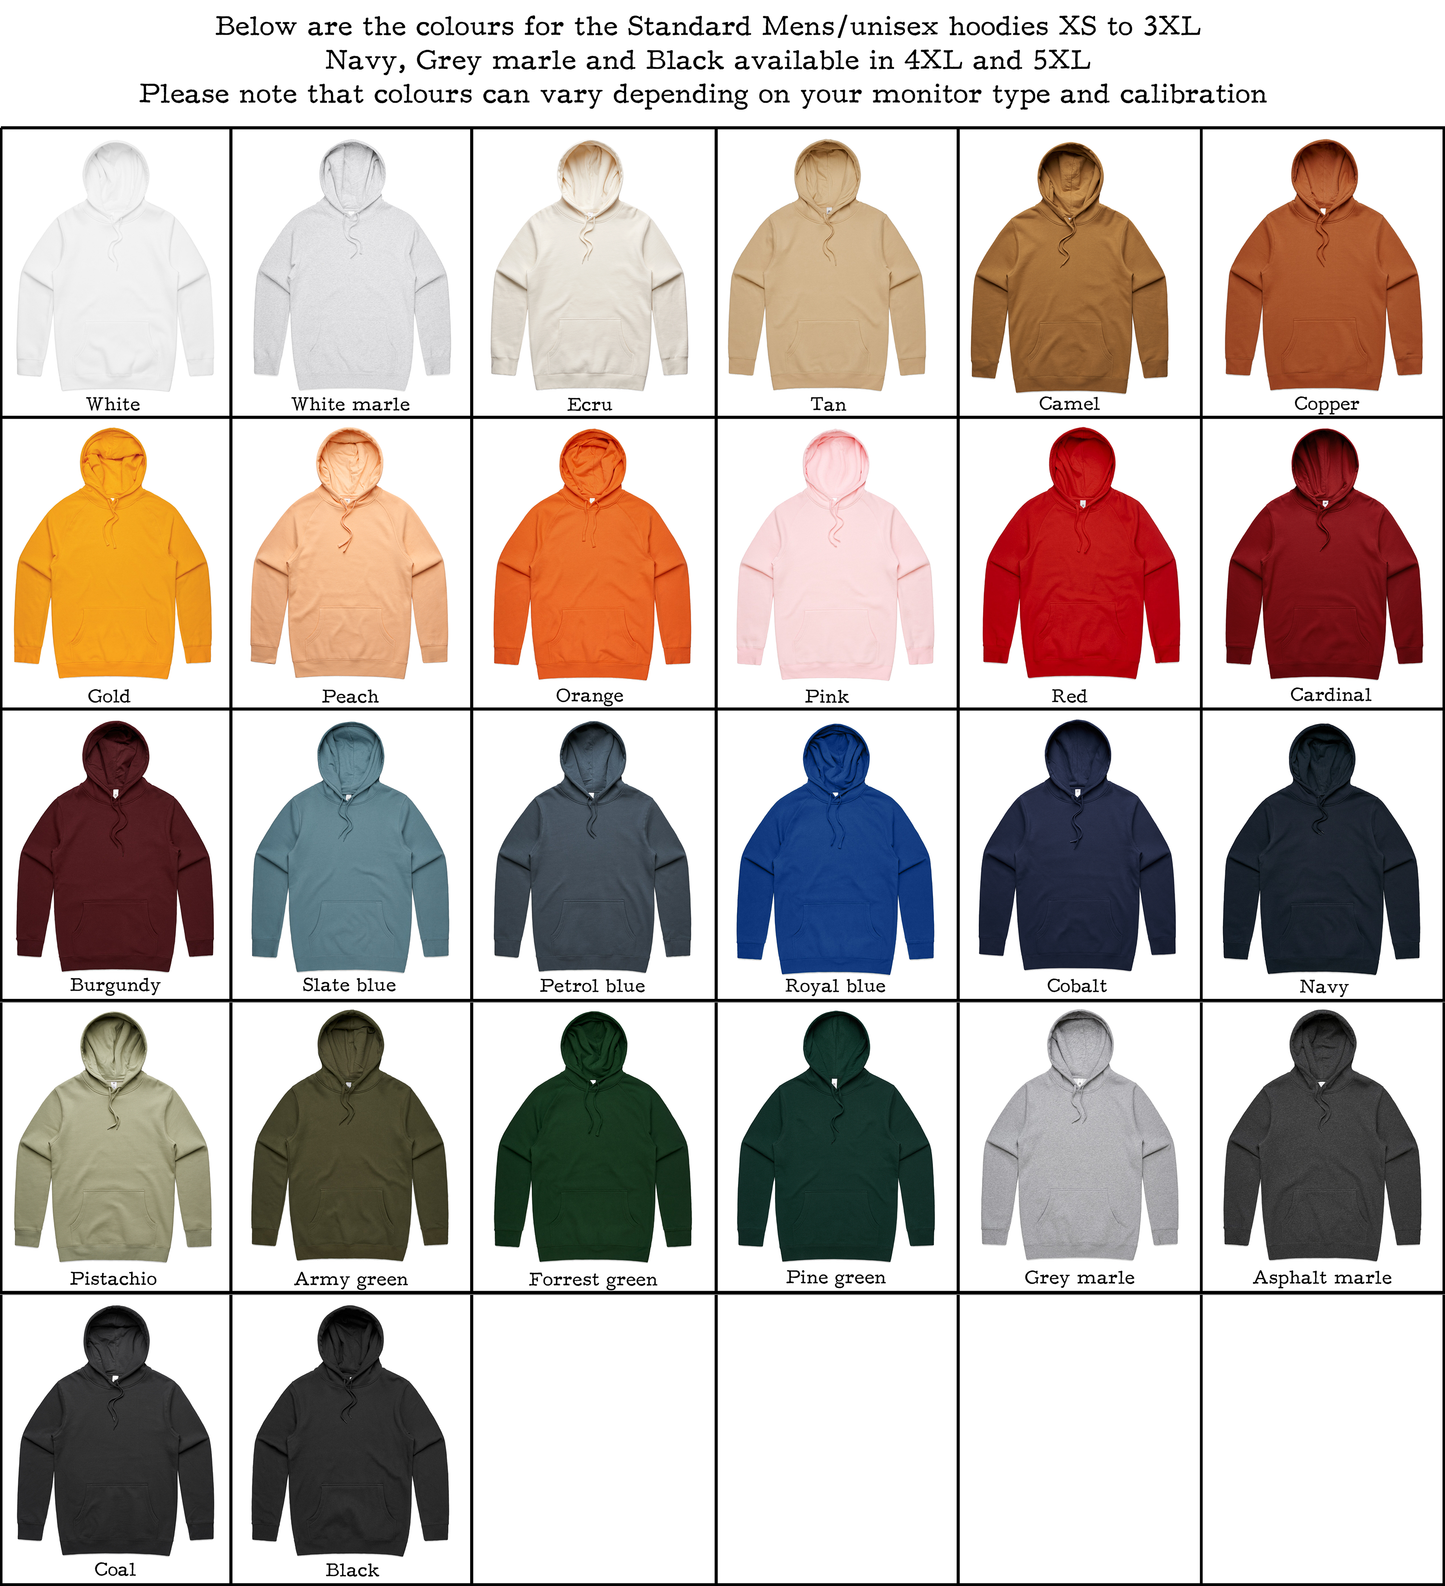 Be Kind - Unisex standard hoodie